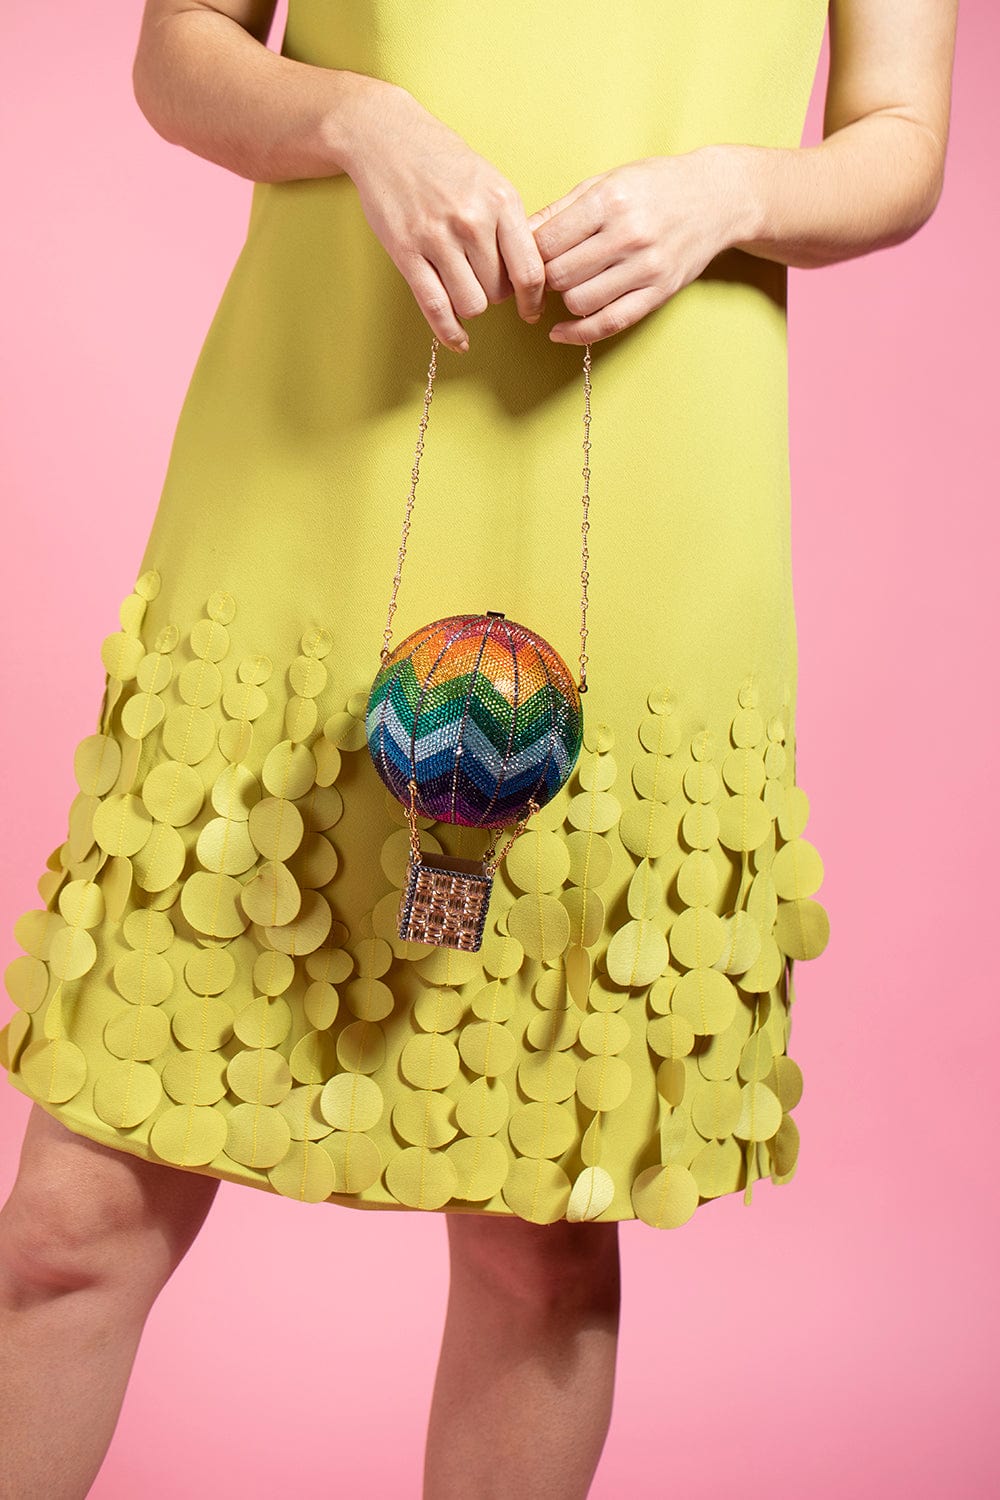 Flights of Fancy Balloon Bag | Fancy clutch, Unusual handbags, Fancy